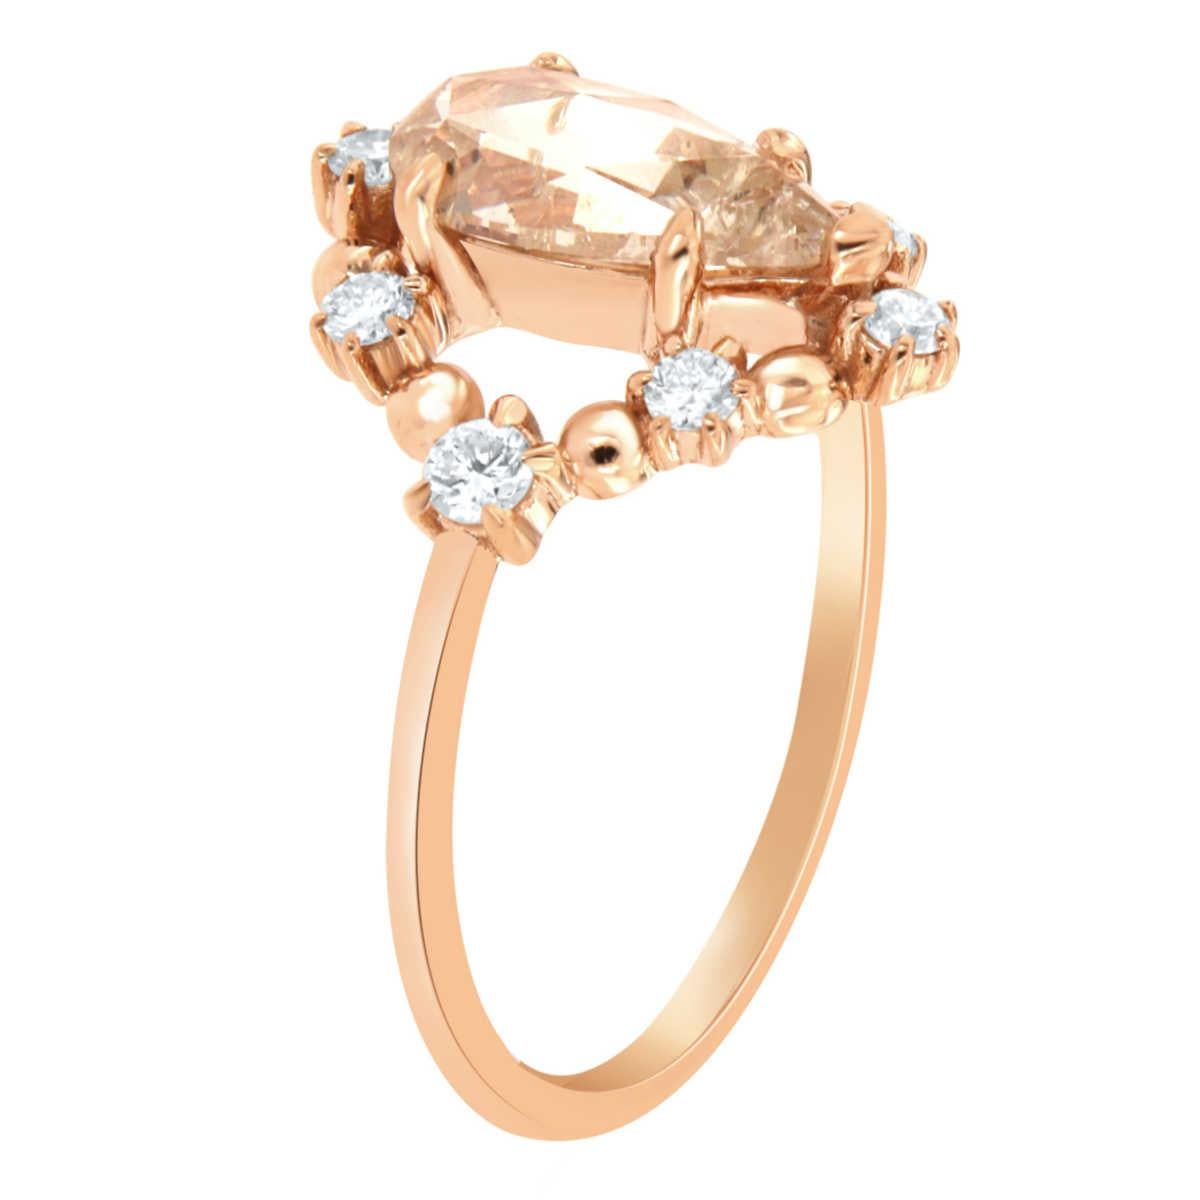 Diese 18k Rose Gold zart rustikalen Ring verfügt über eine 1,10 Karat Birne Form facettiert brillanten Licht Champagner Farbe Natural Diamond durch eine verstreute Halo von acht (8) brillanten runden Diamanten auf der Oberseite eines 1,3 MM breite